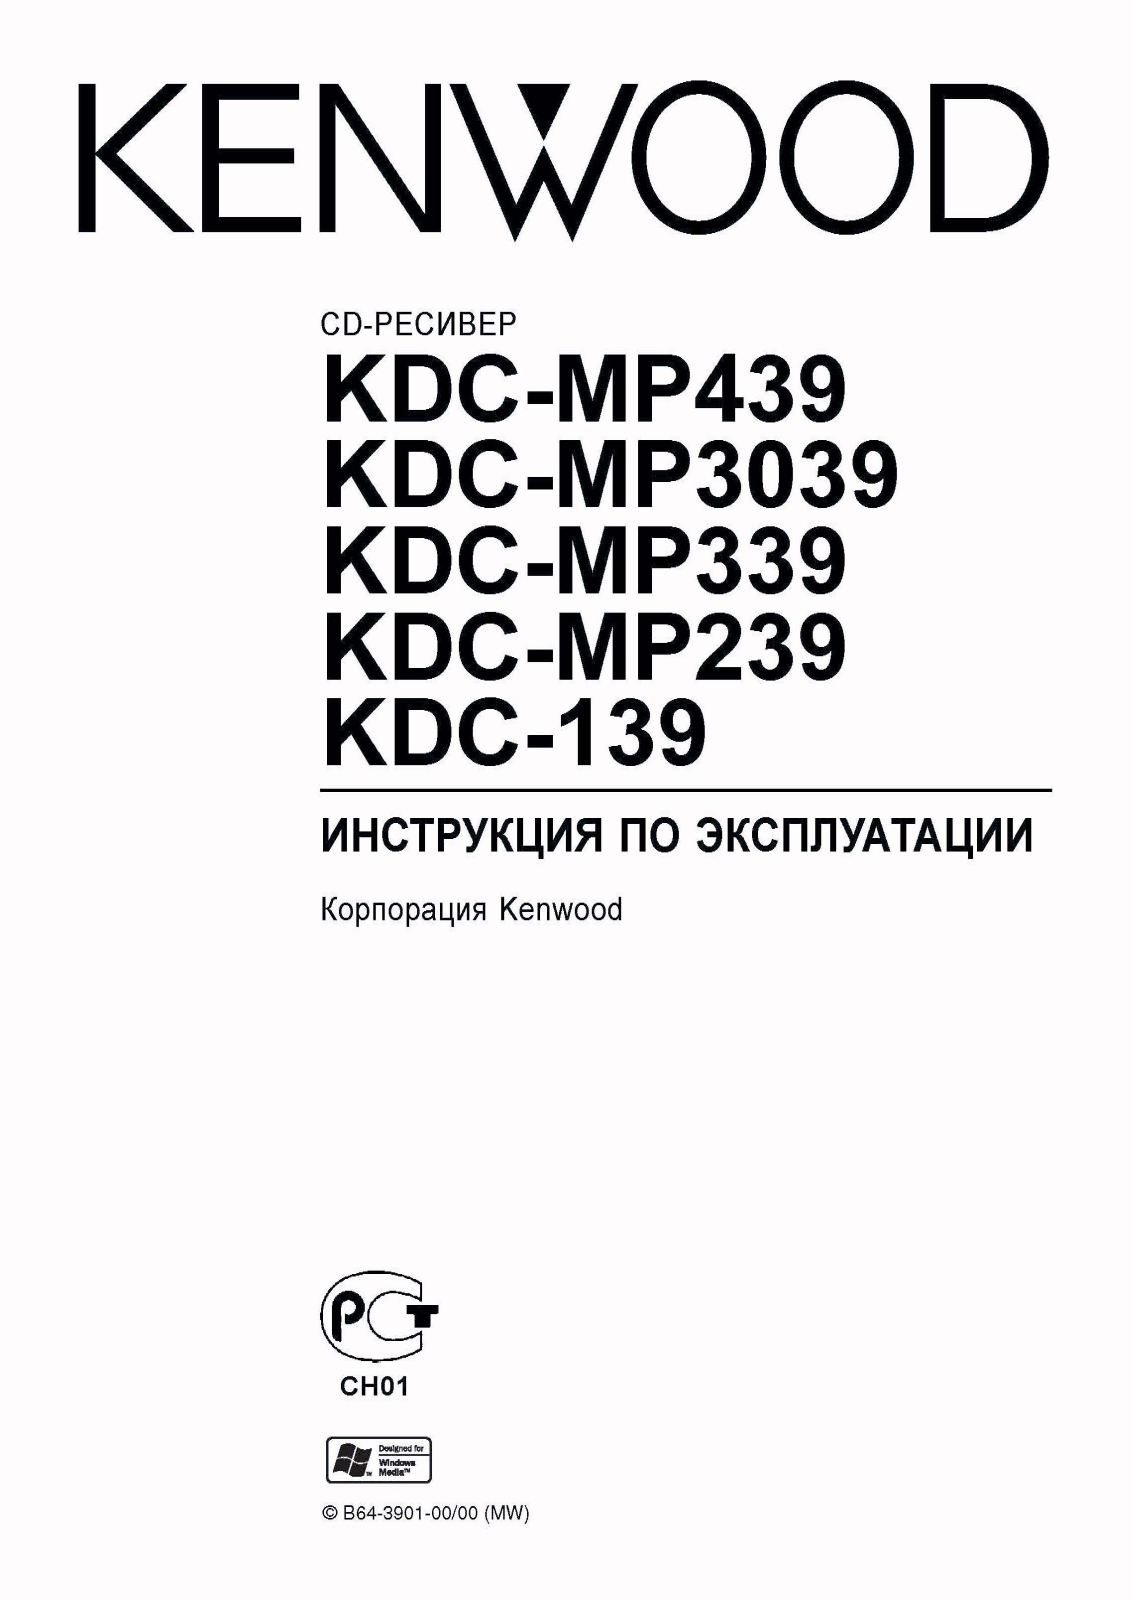 KENWOOD KDC-MP239, KDC-MP439, KDC-MP339, KDC-MP3039 User Manual